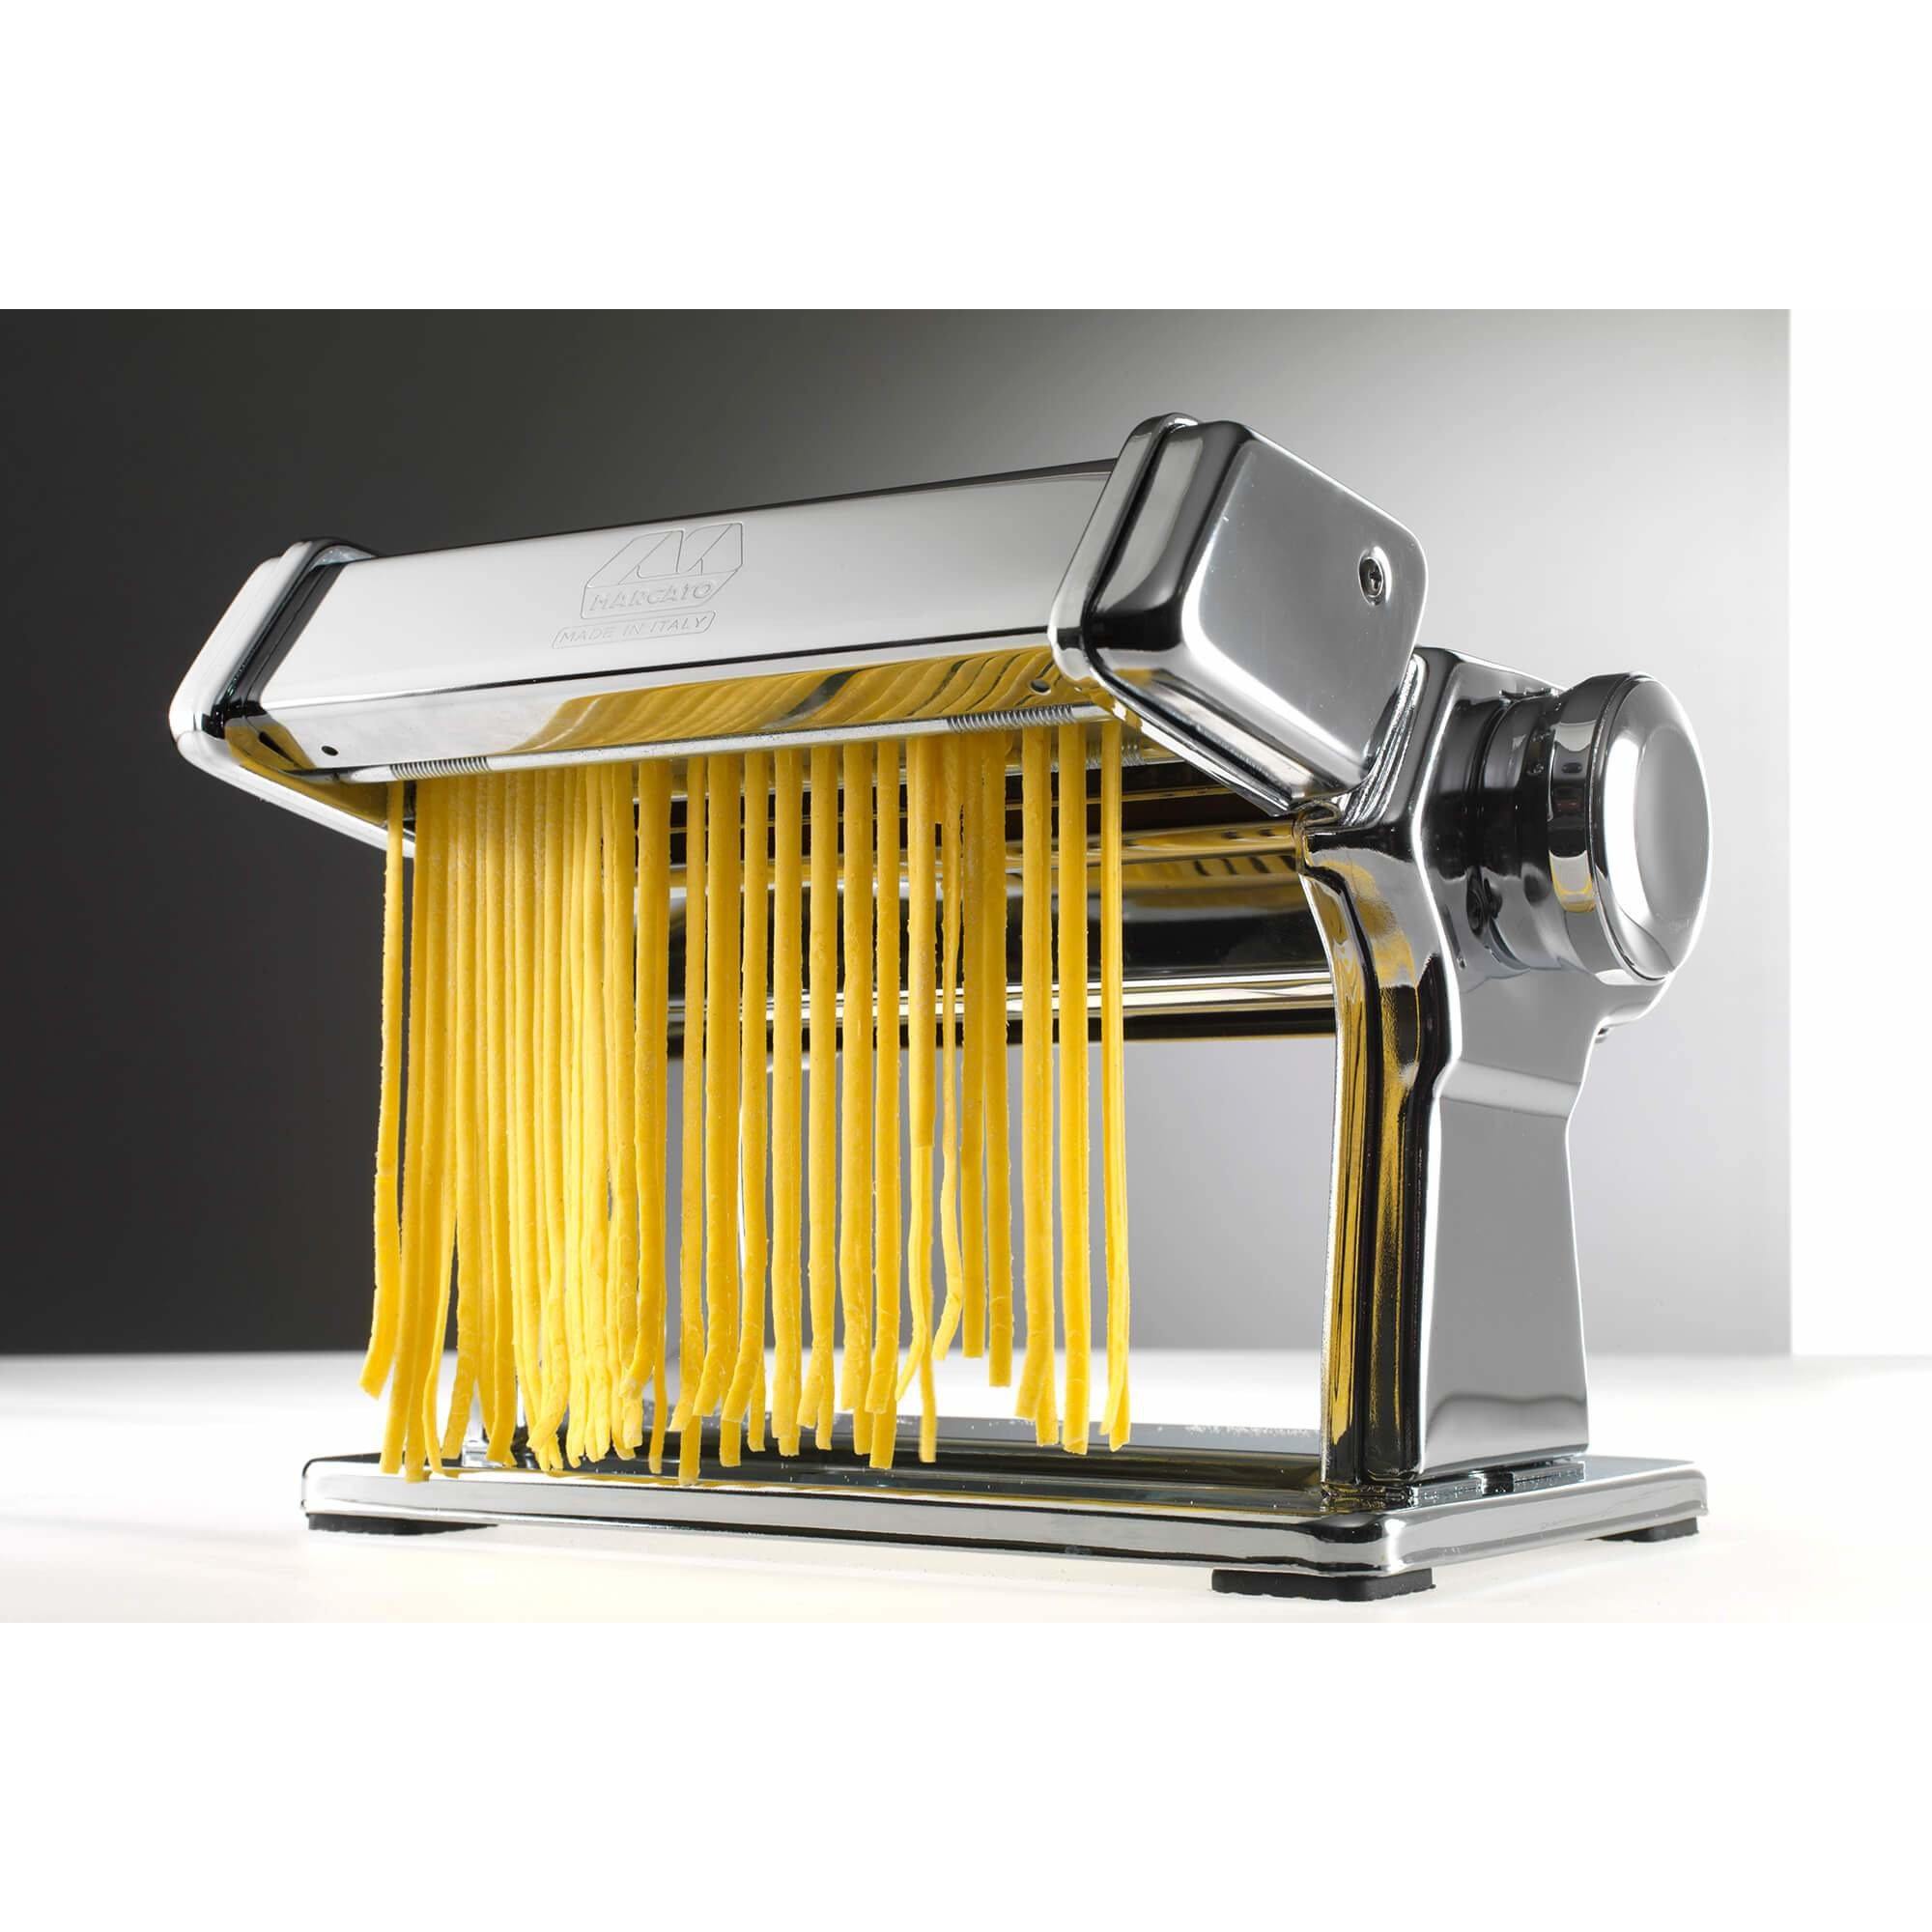 Marcato Linguine Attachment (3mm) - Pasta Kitchen (tutto pasta)